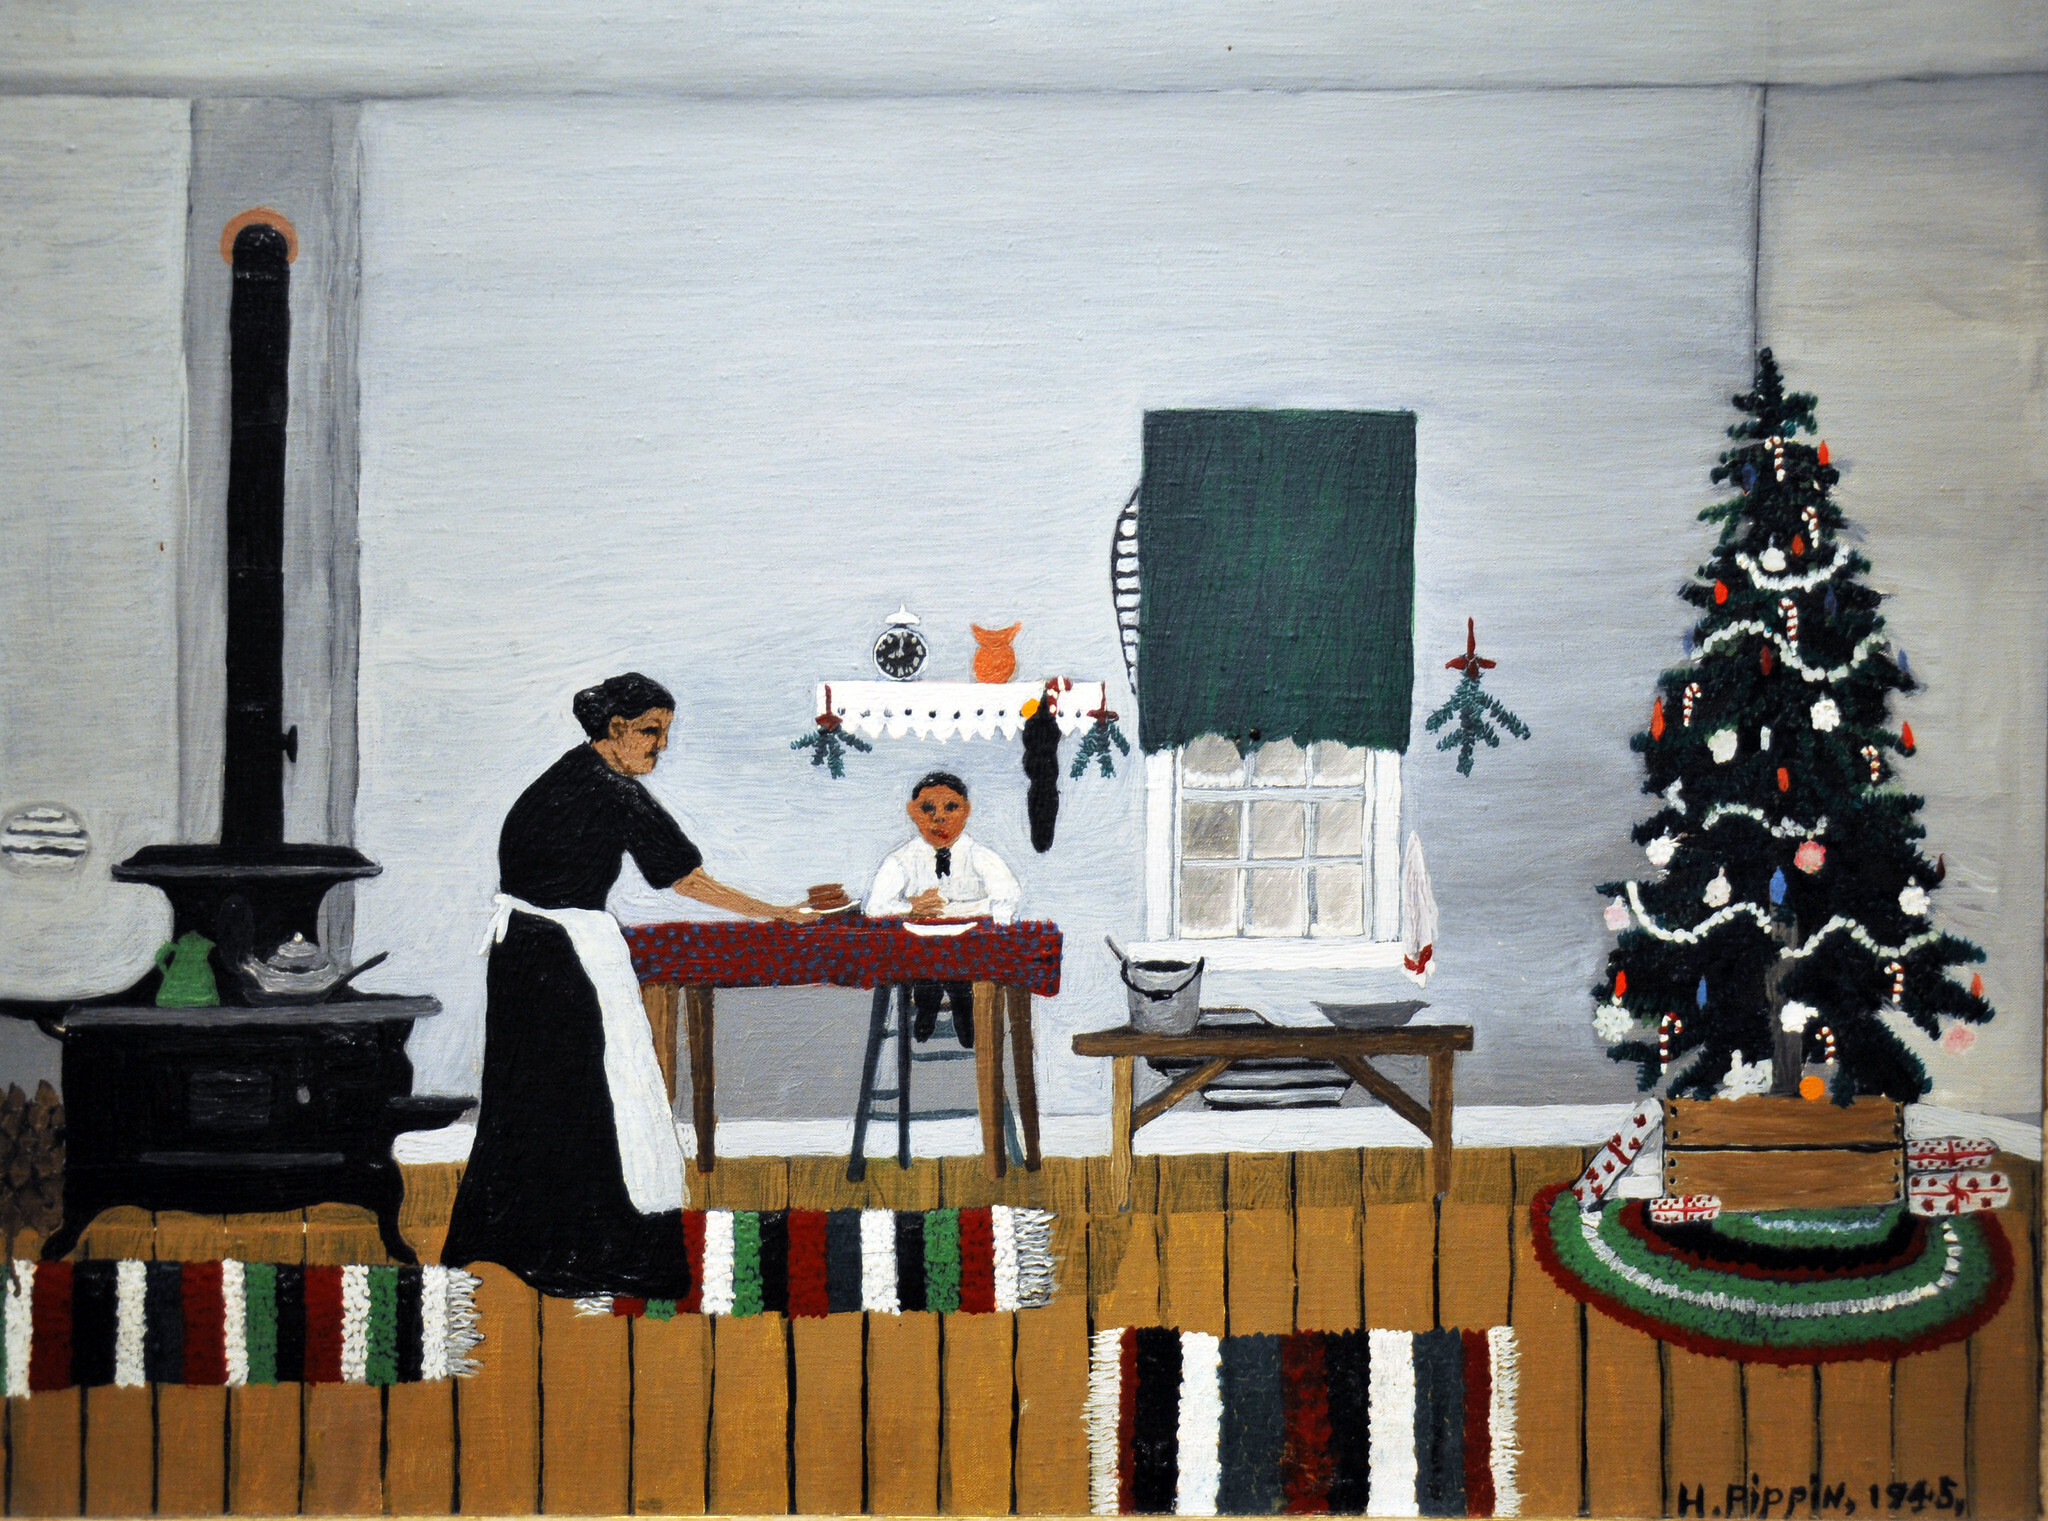 Świąteczny poranek, śniadanie by Horace Pippin - 1945 - 53,6 x 66,5 cm 